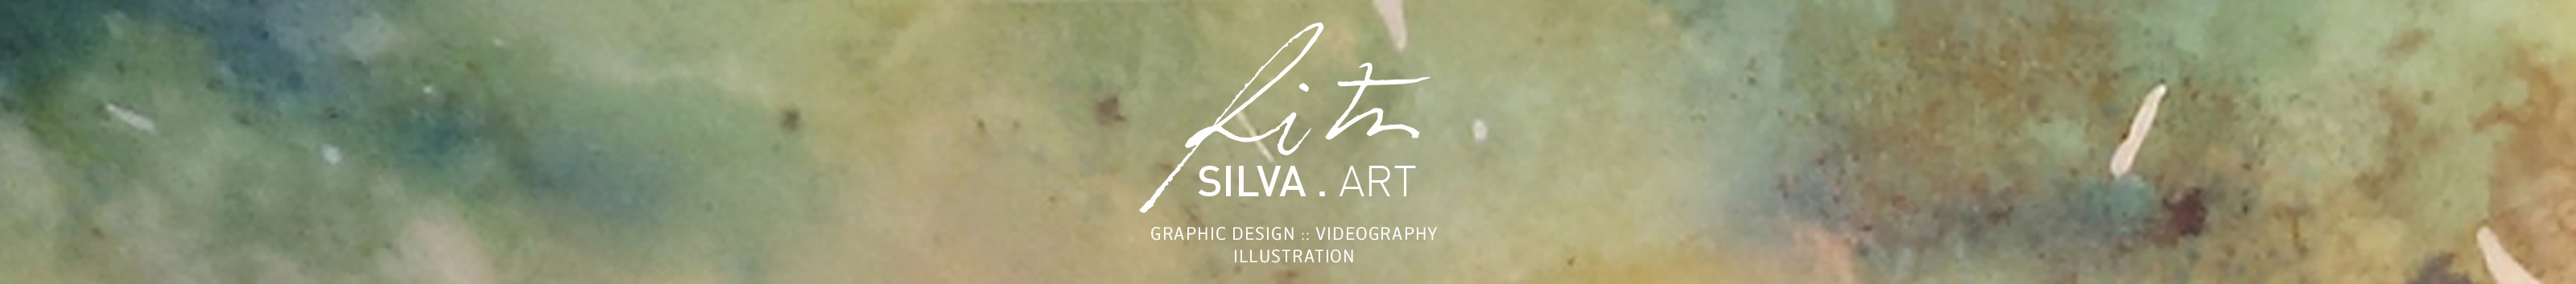 Bannière de profil de Rita Silva